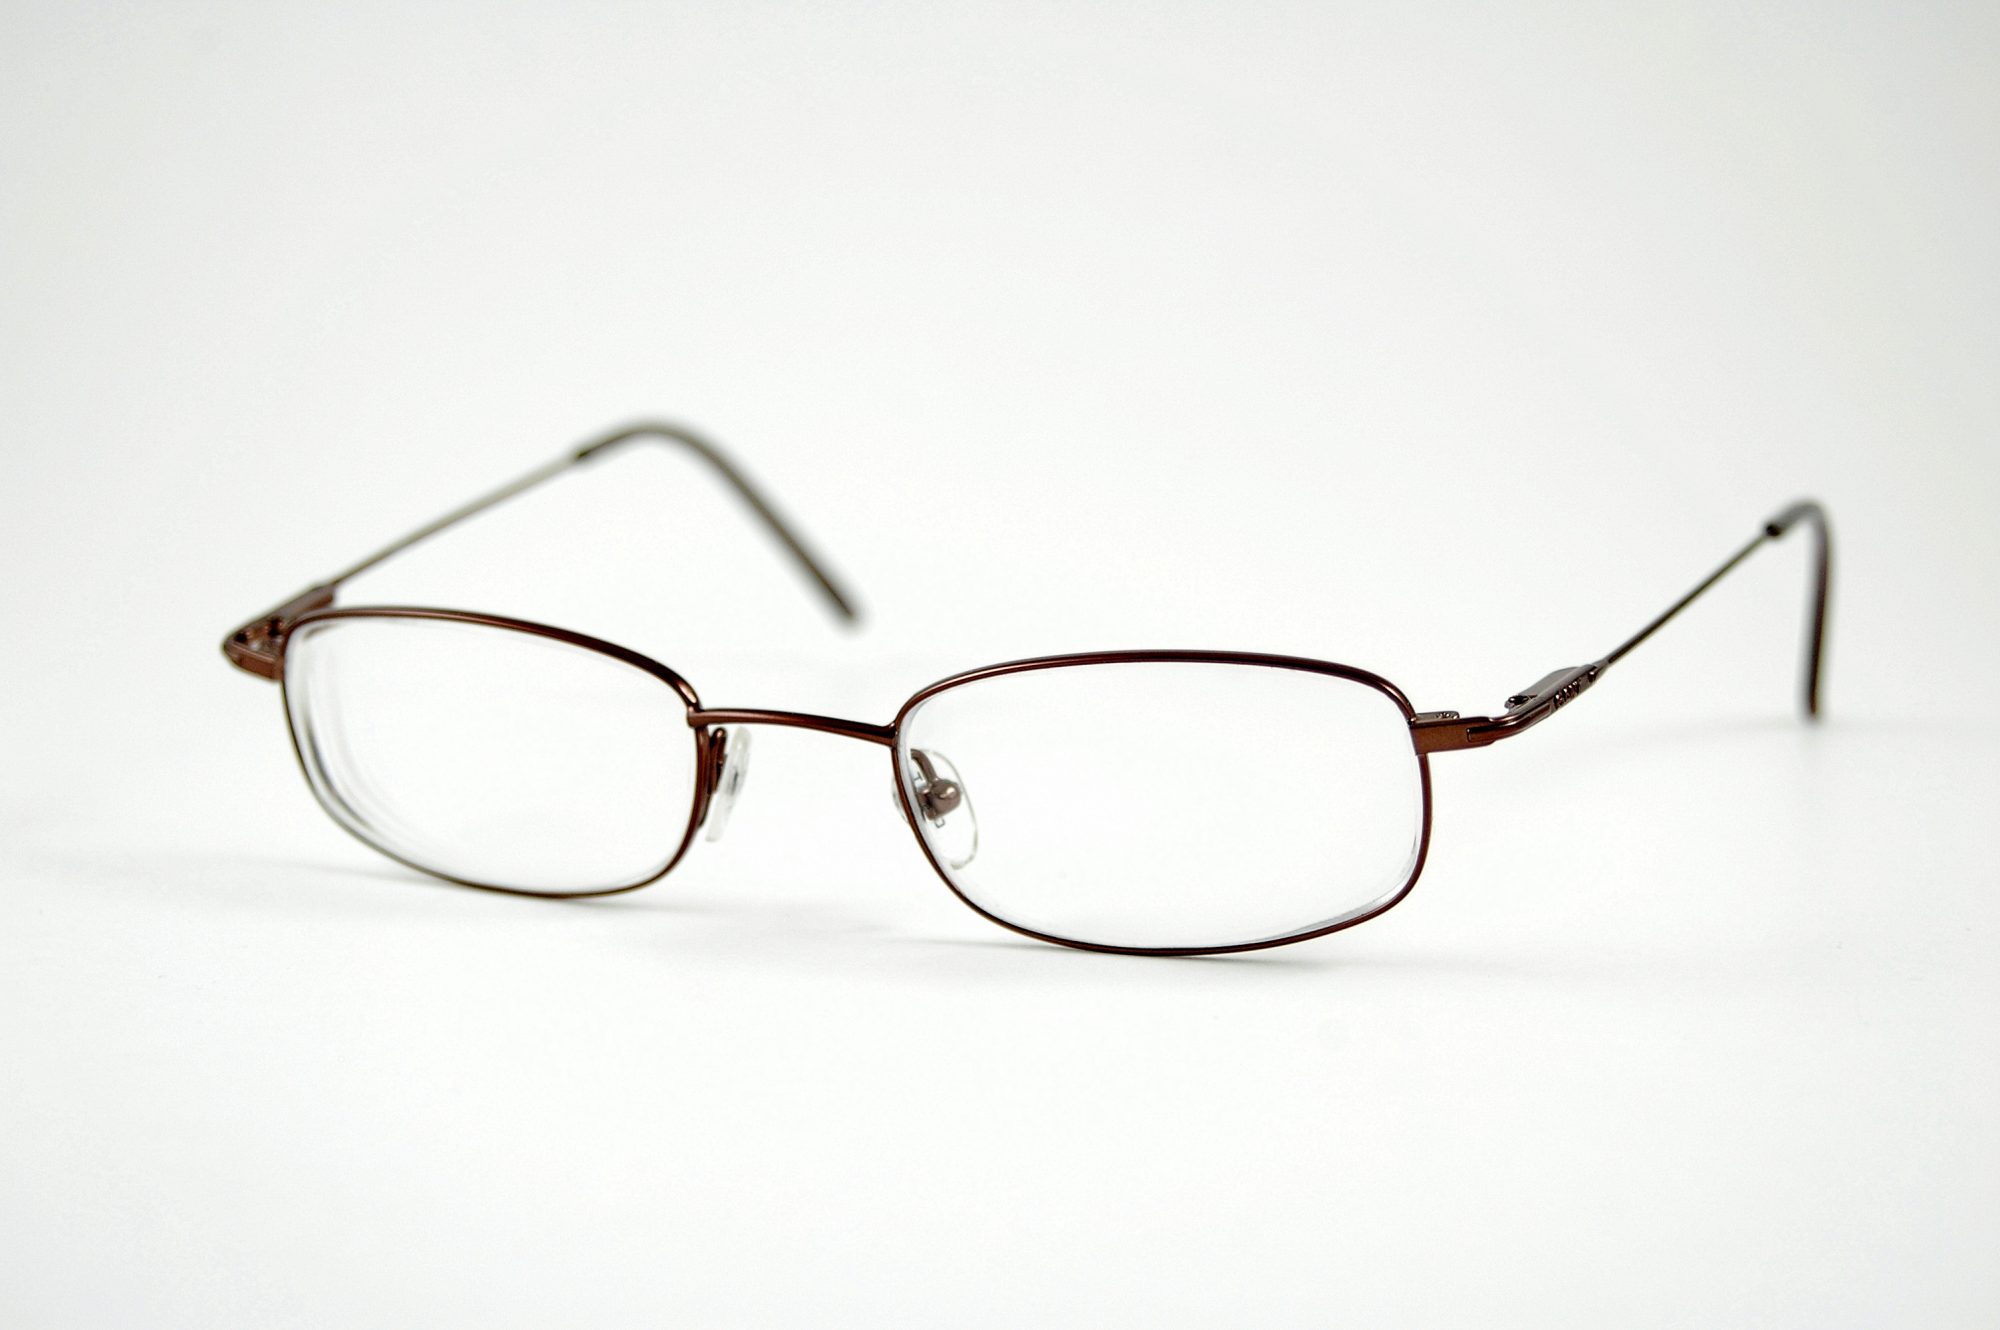 Brille Brillenbestimmung Brillen Gleitsichtbrille Fernbrille Lesebrille Sonnenbrillen Augenarzt St Valentin